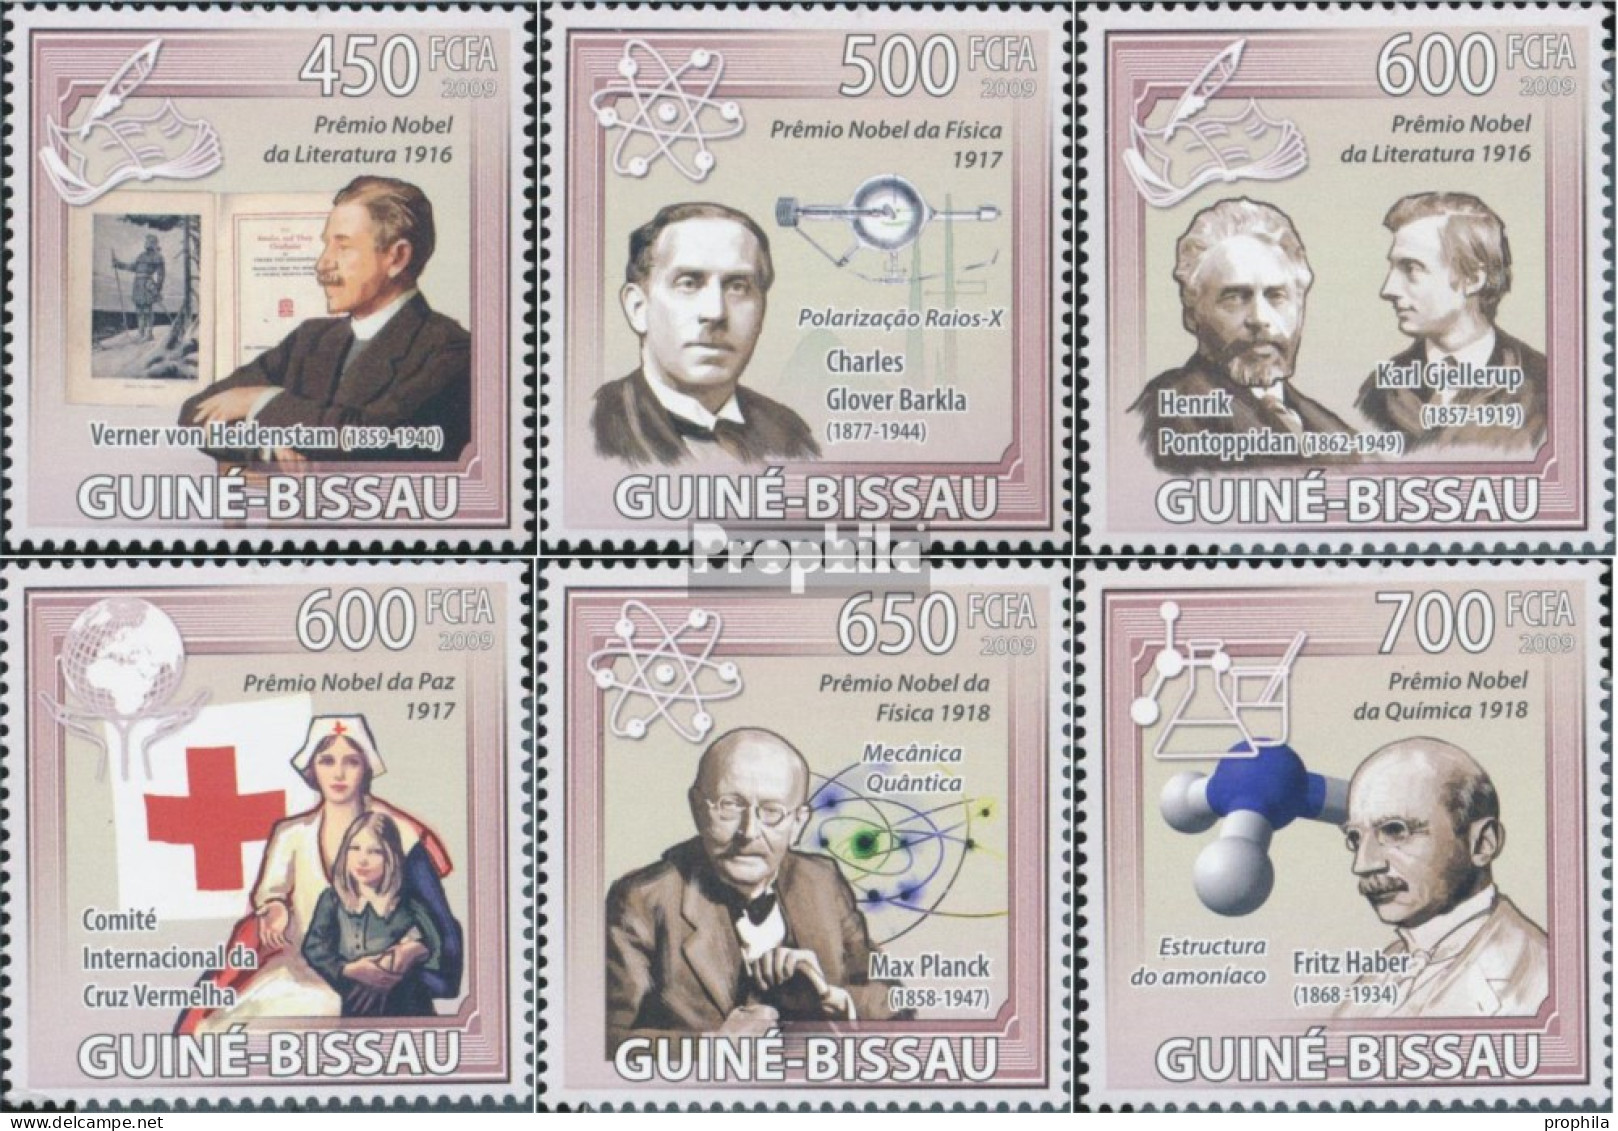 Guinea-Bissau 4532-4537 (kompl. Ausgabe) Postfrisch 2009 Nobelpreis 1916-1918 - Guinea-Bissau